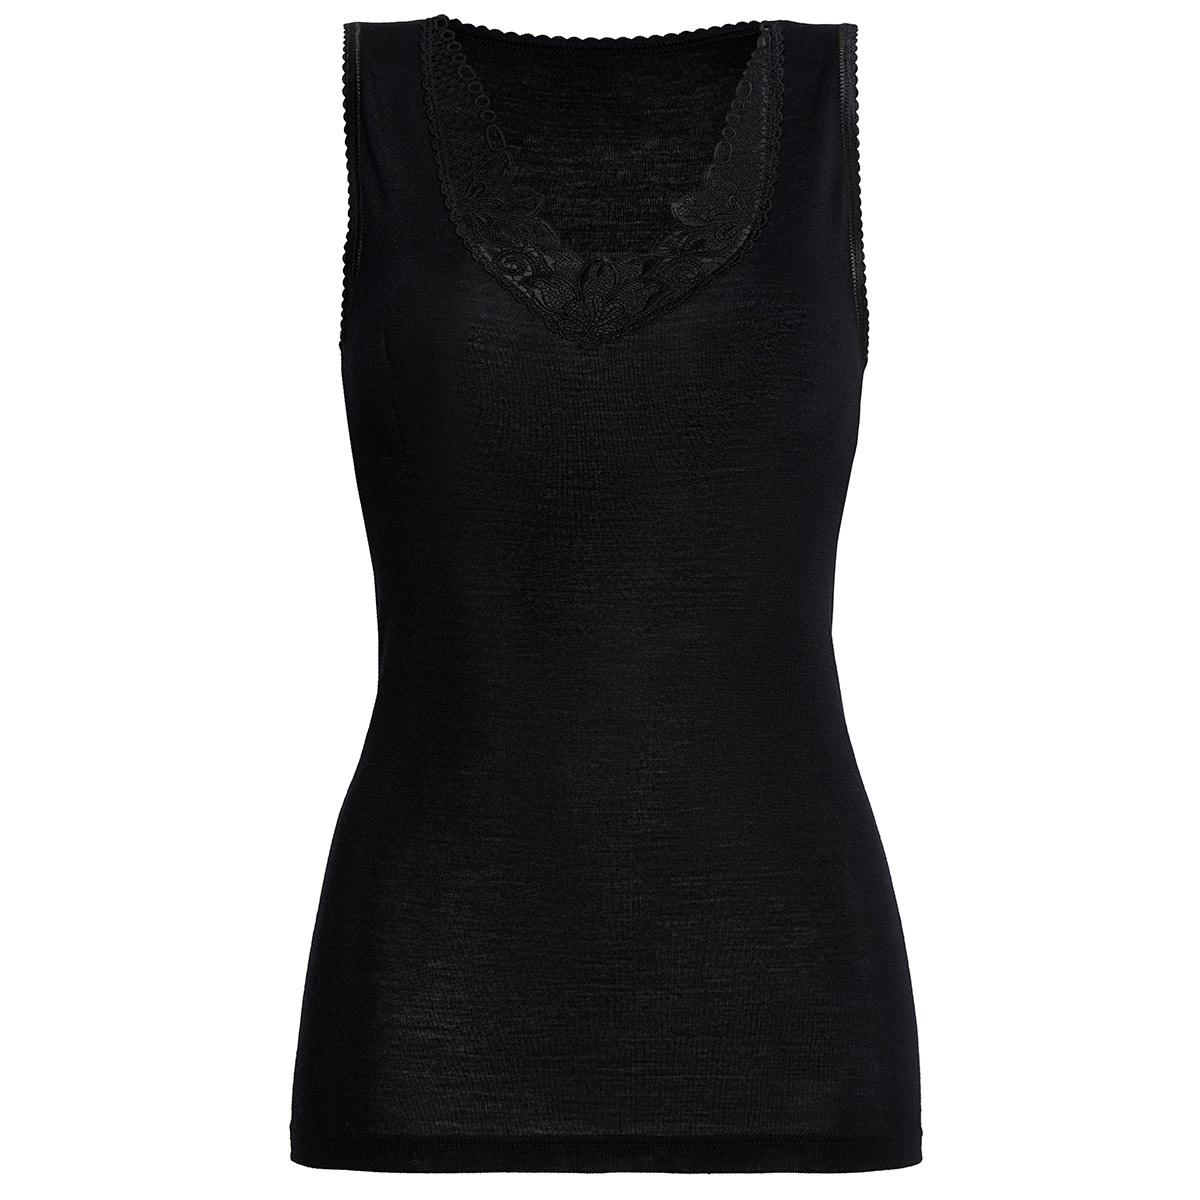 Susa Hemdchen mit Spitze Modell Sangora in schwarz